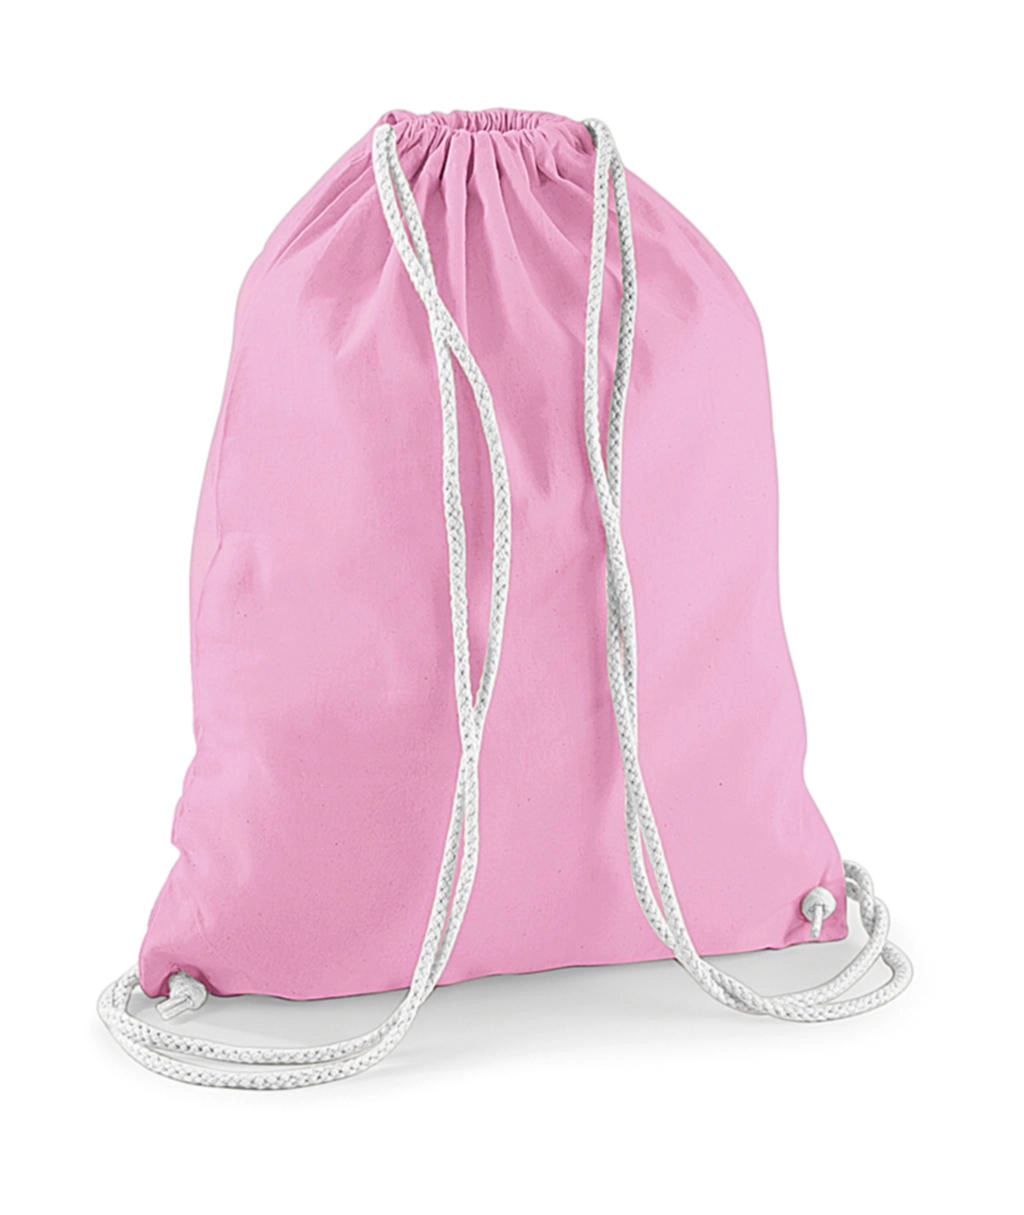 Cotton Gymsac zum Besticken und Bedrucken in der Farbe Classic Pink/White mit Ihren Logo, Schriftzug oder Motiv.